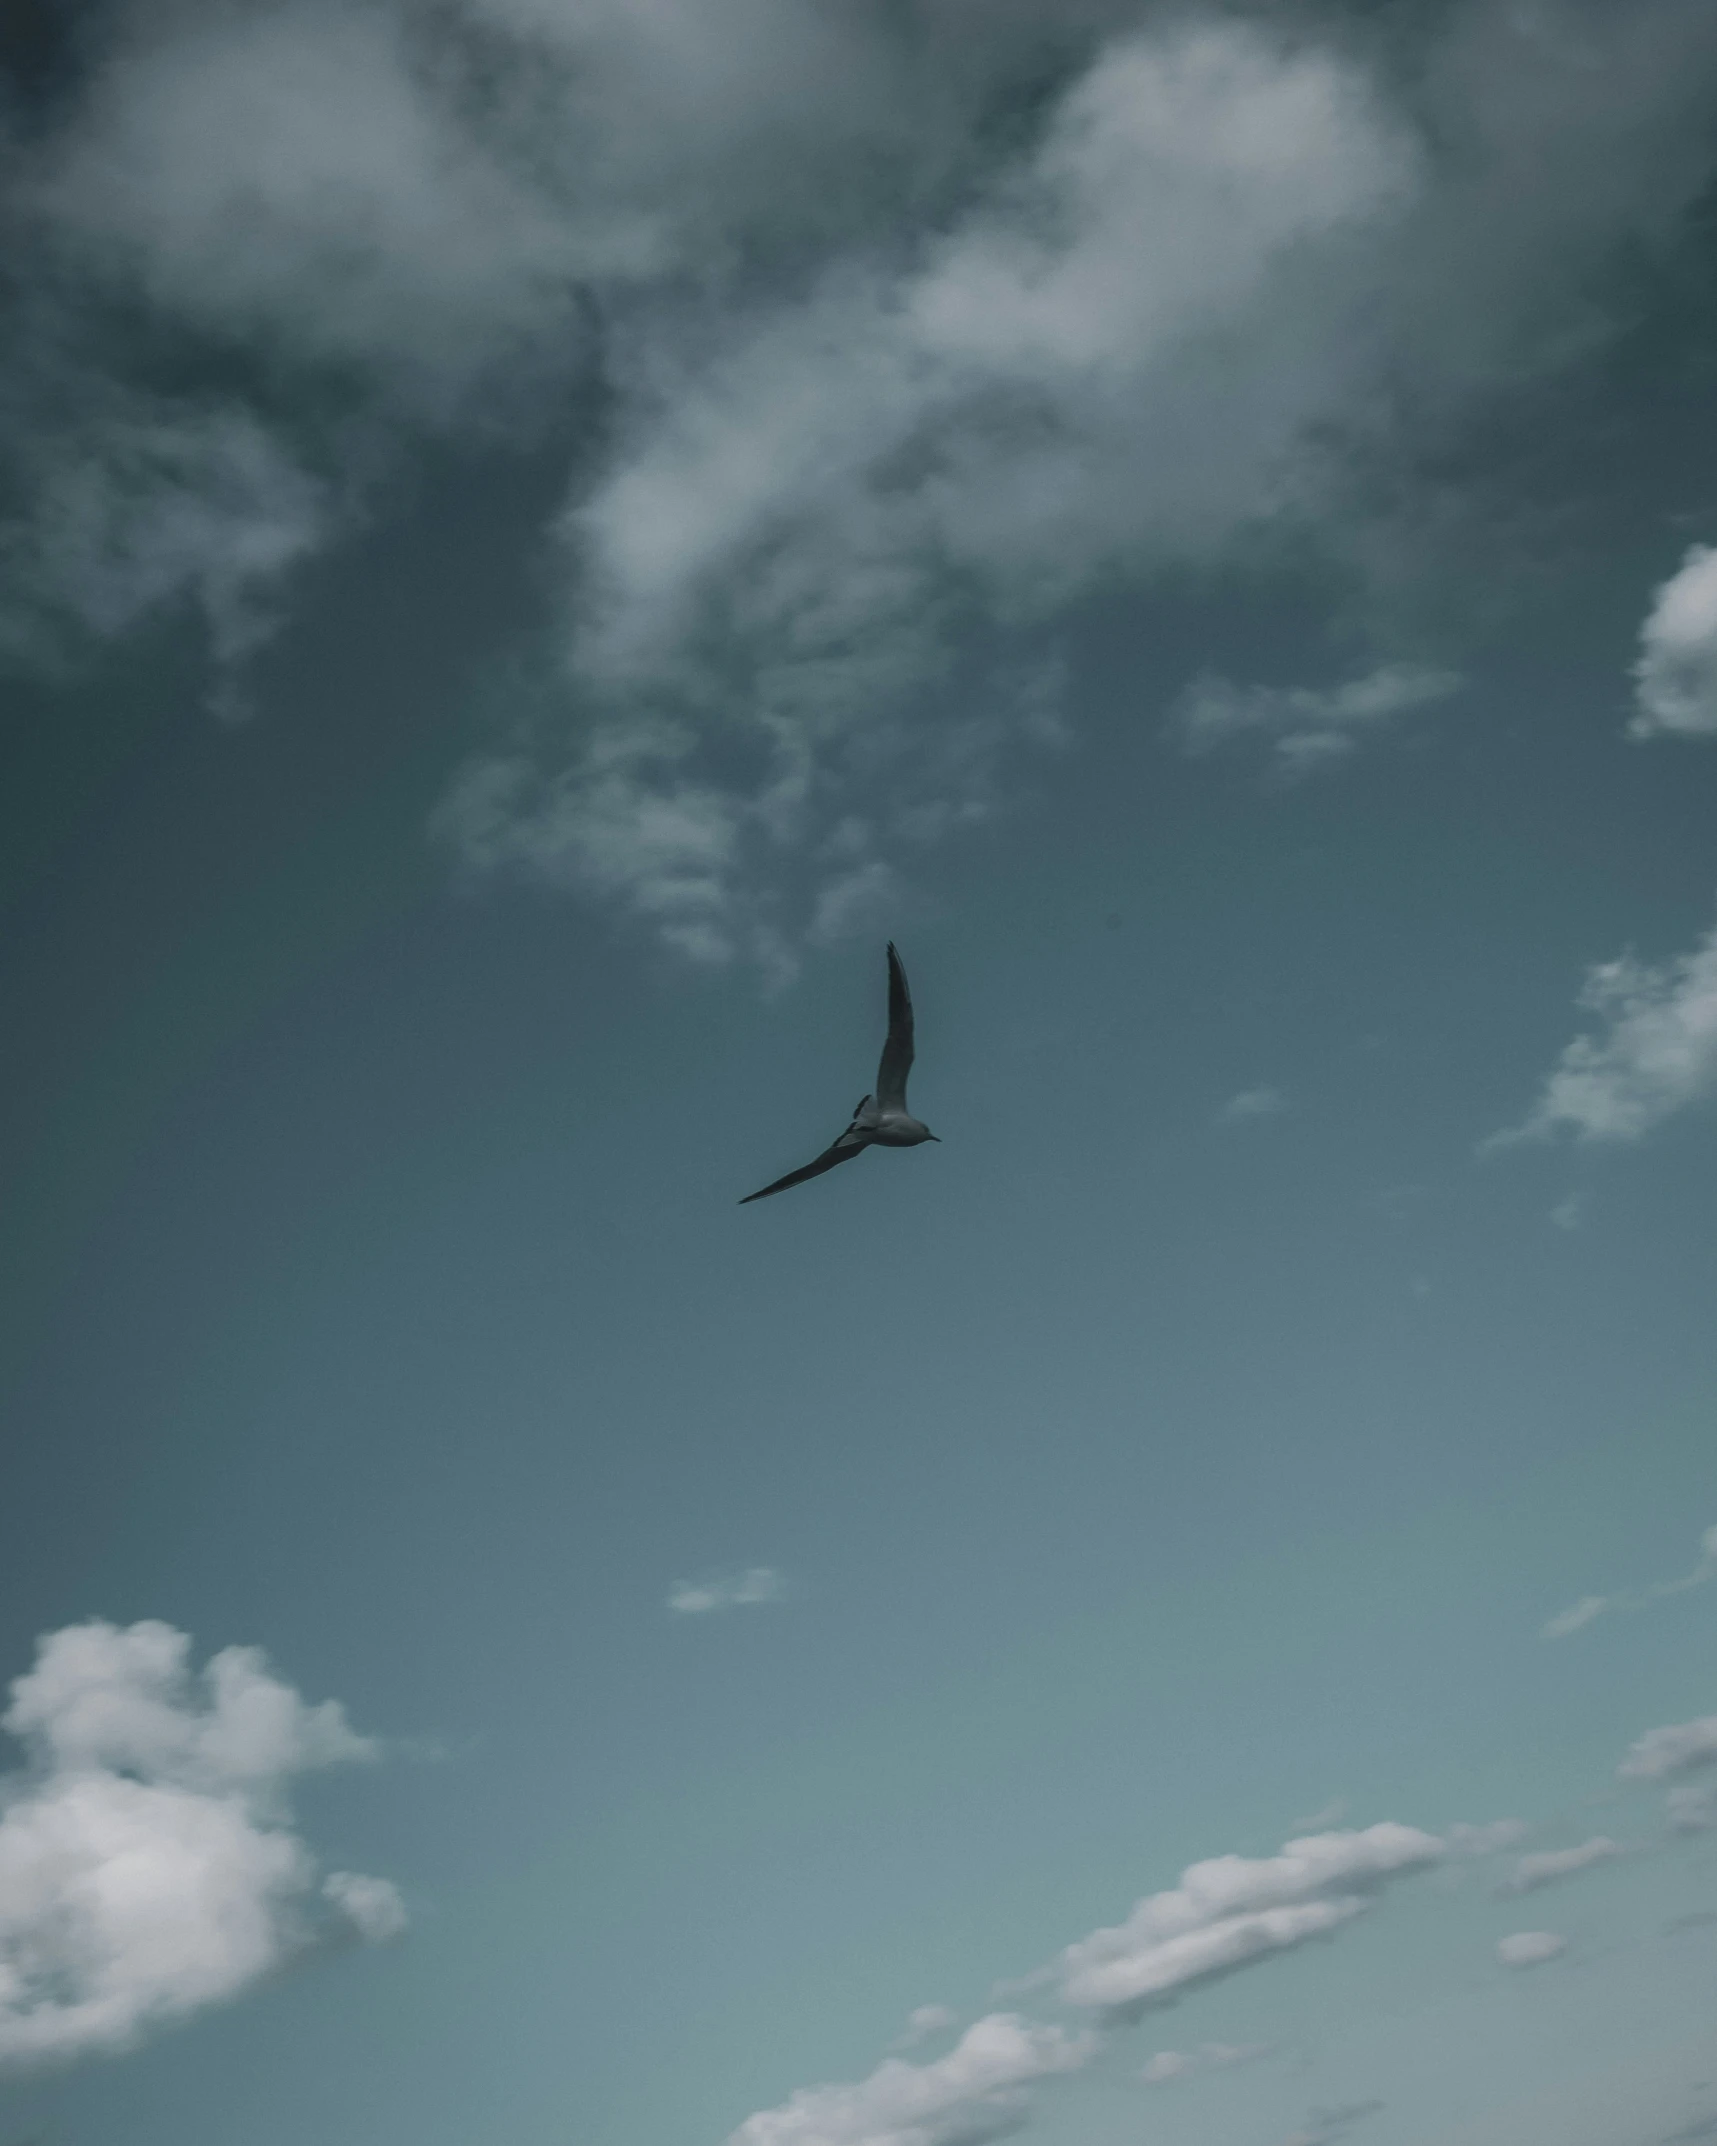 a single bird soaring through the sky